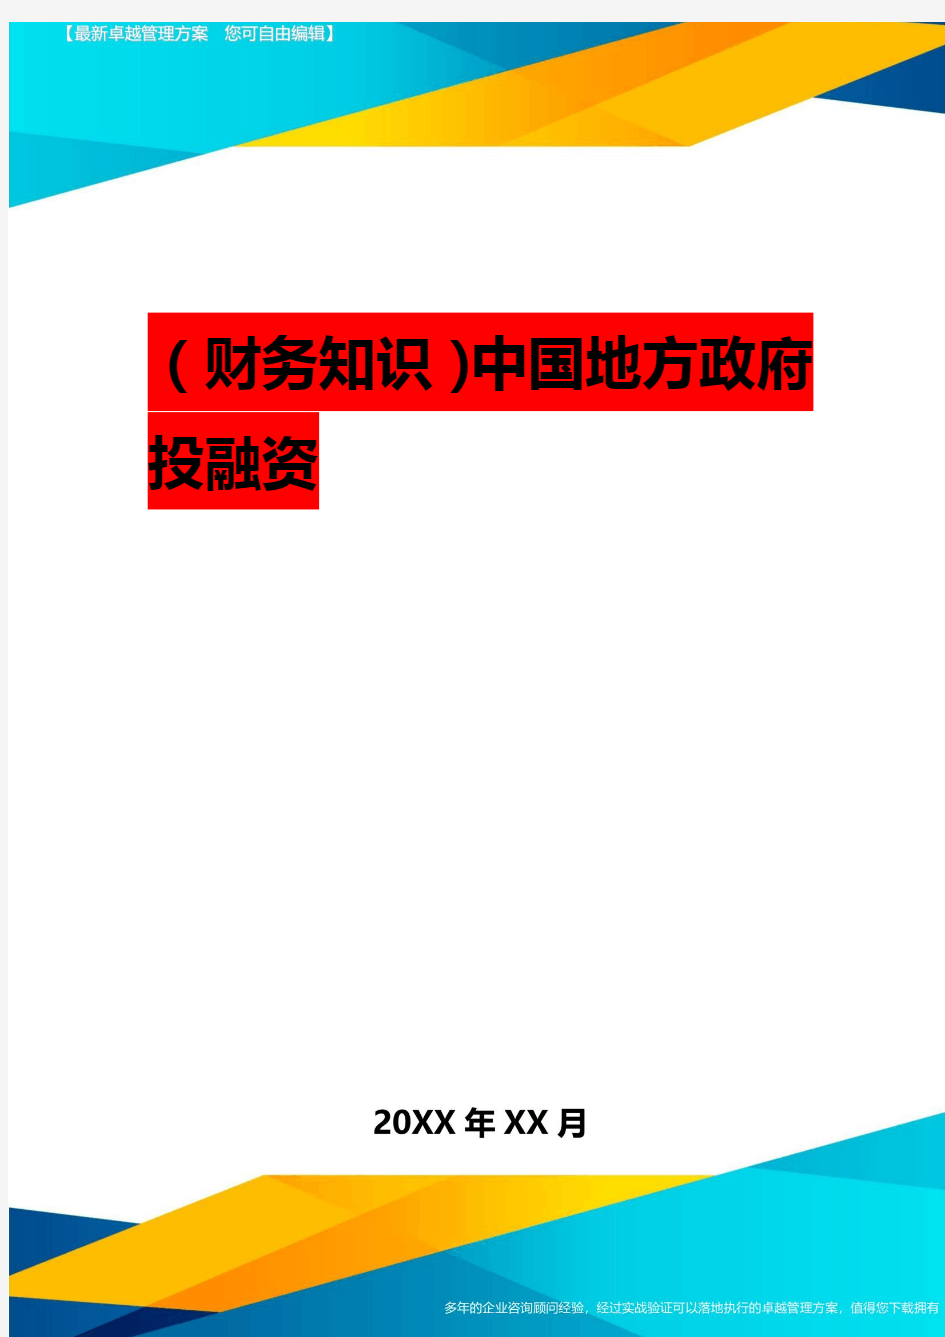 2020年(财务知识)中国地方政府投融资